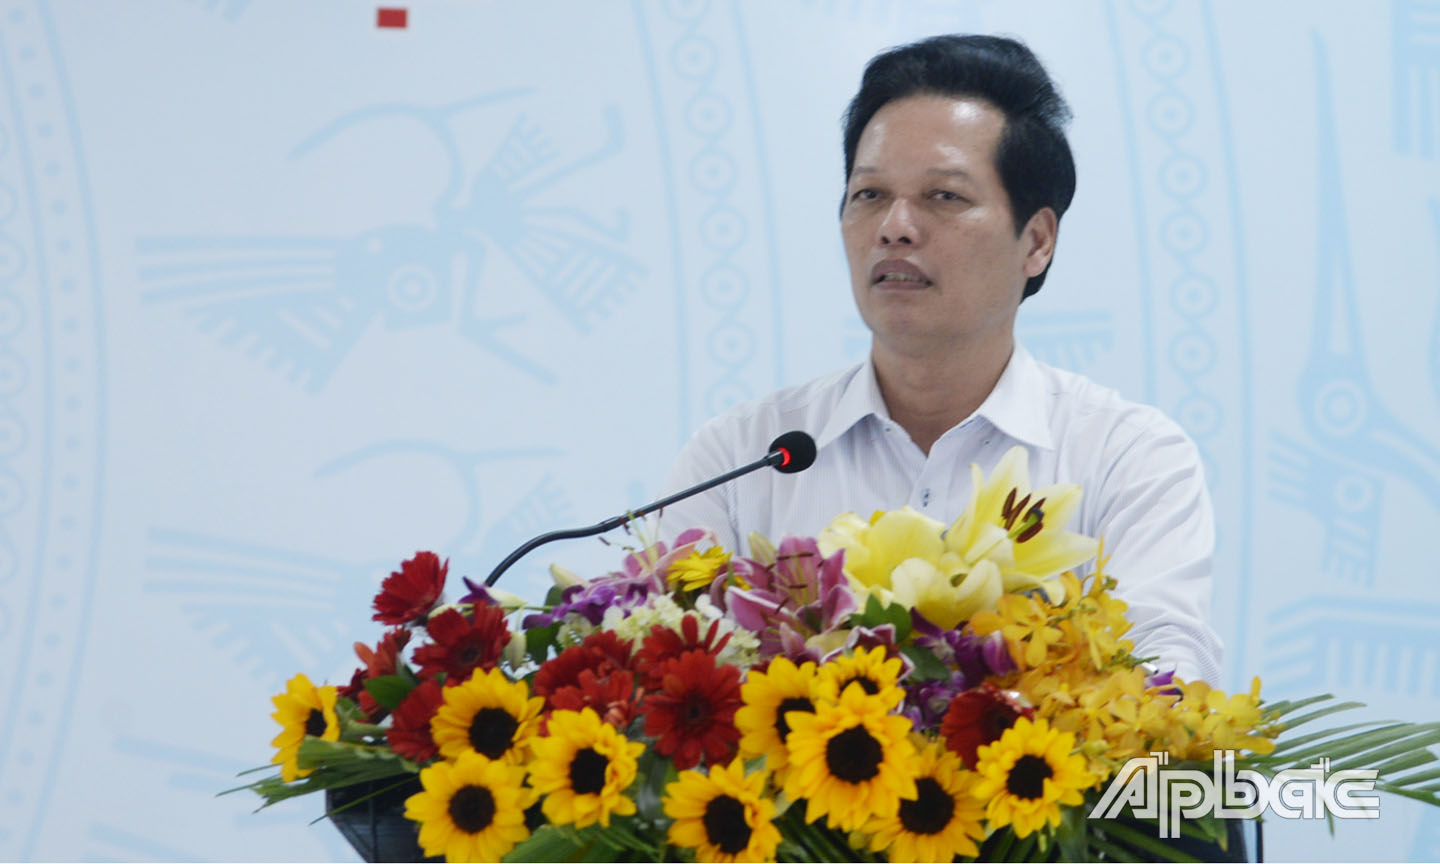 Đồng chí Nguyễn Thành Diệu phát biểu tại buổi lễ.